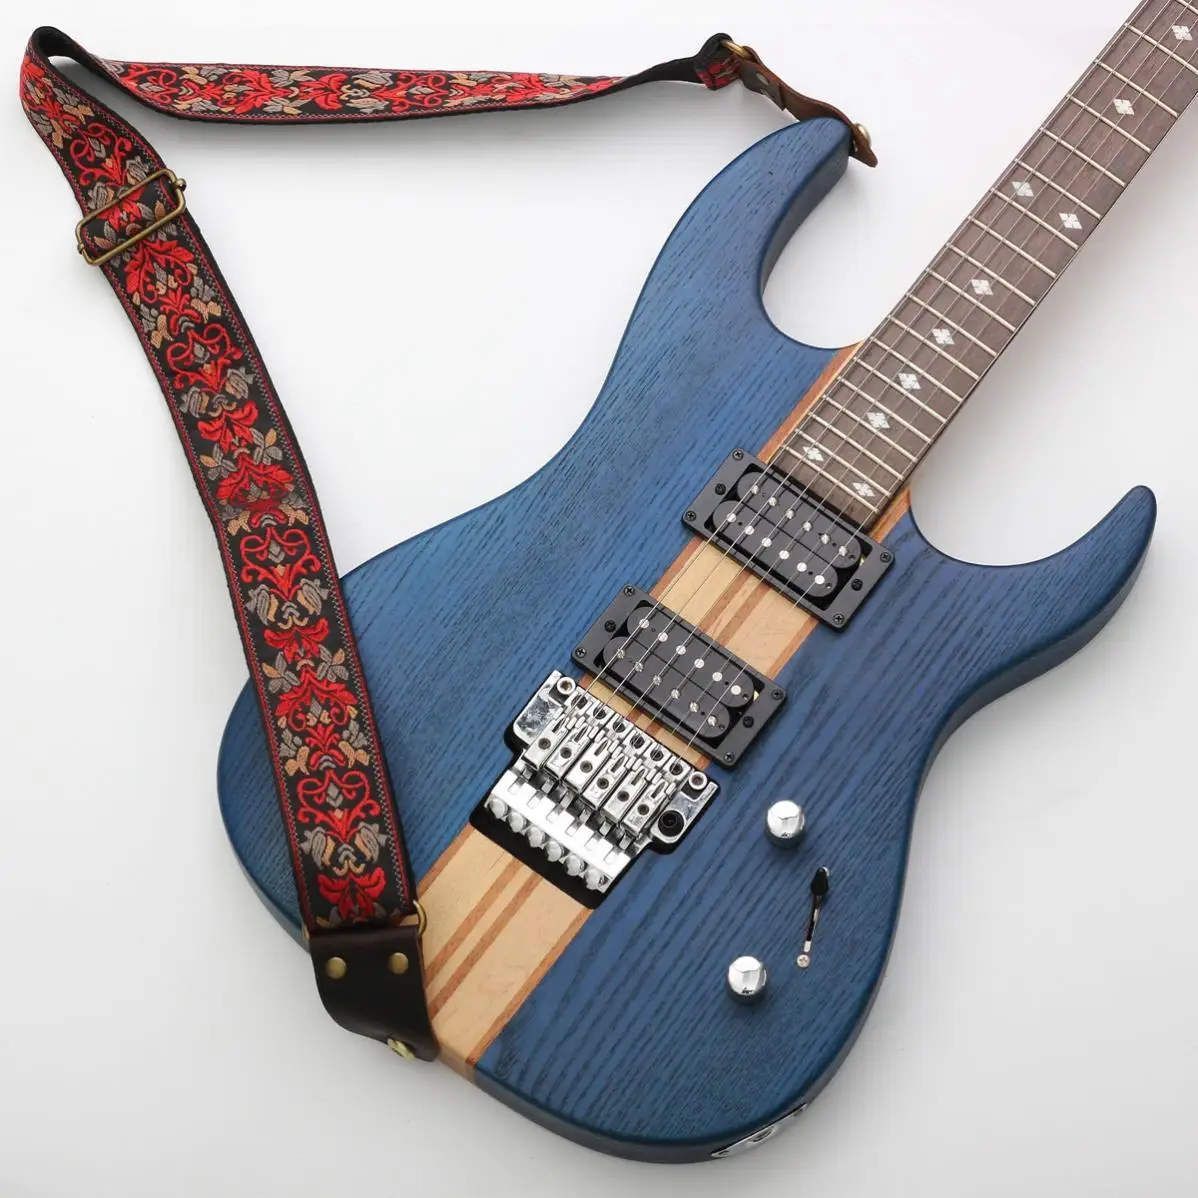 Sangle de guitare basse en Nylon, bandes de tête en cuir véritable colorées  réglables, tissus brodés de Style bohémien pour guitare basse - AliExpress